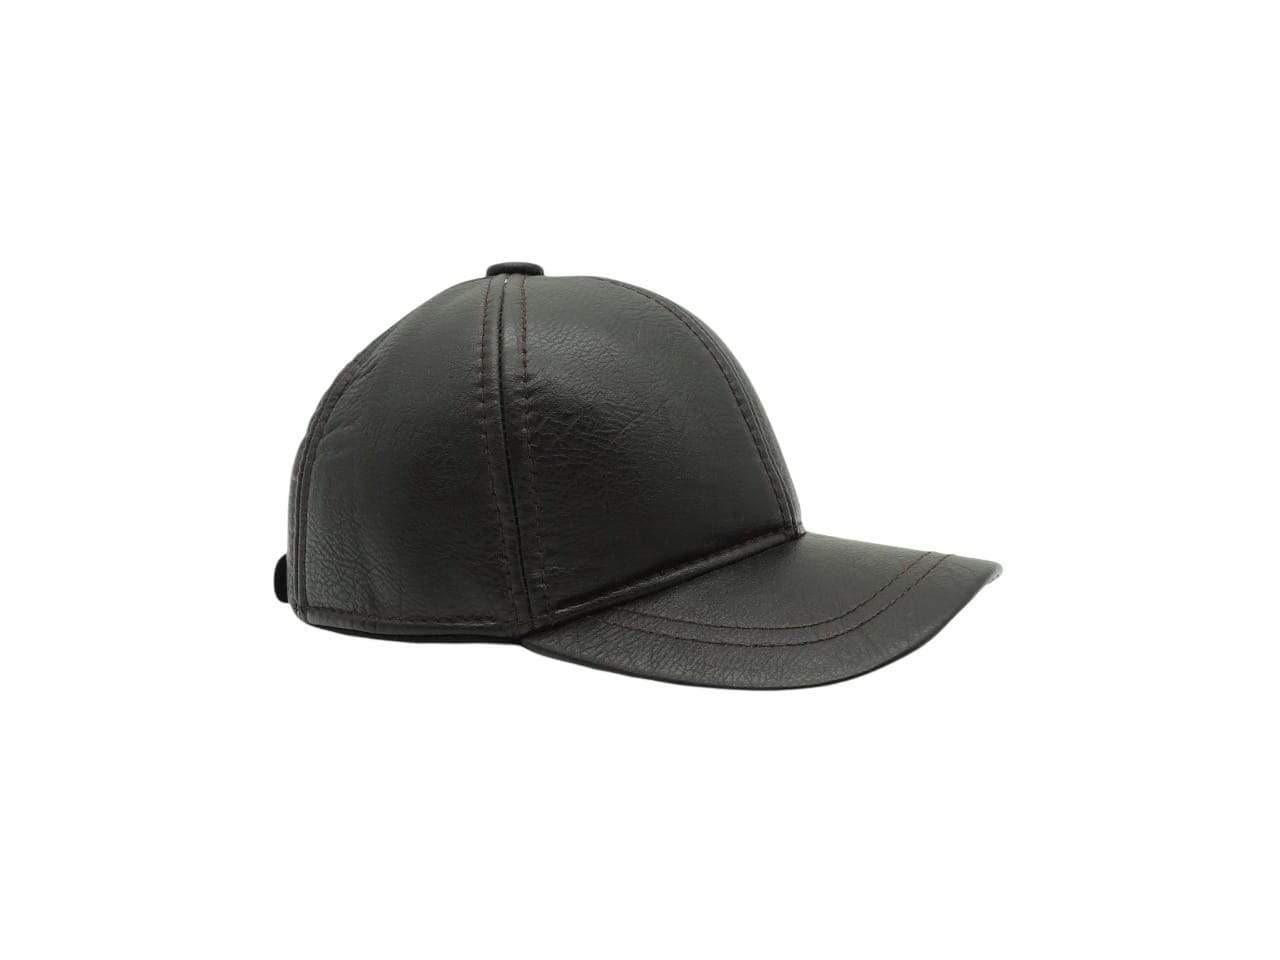 PB MEN'S CAP, CAP, CORADO, accessories, cap, dark brown, men, coradomoda, coradomoda.com